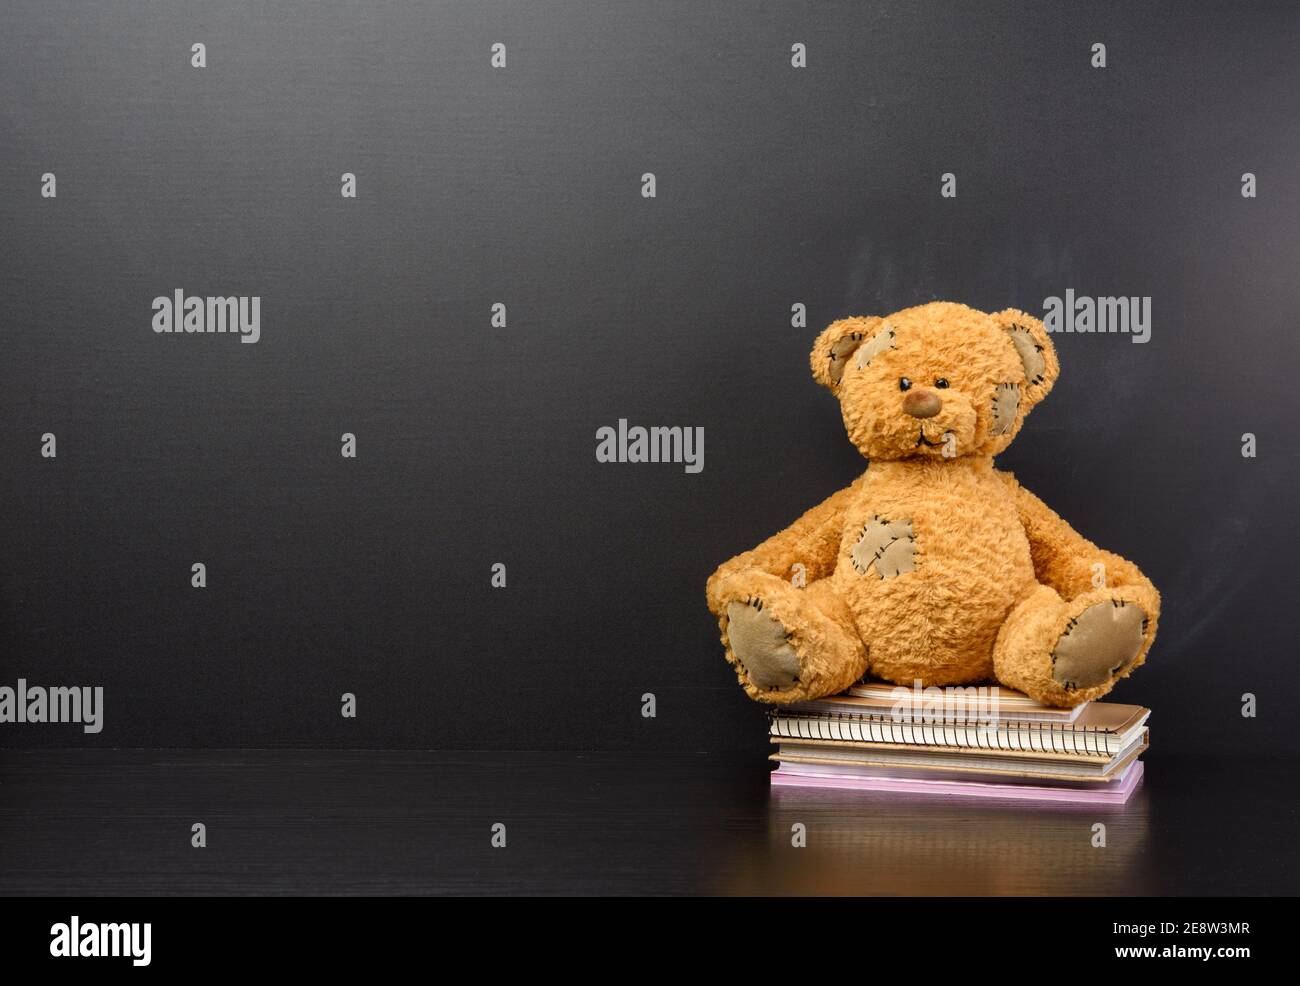 l'ours en peluche brun est assis sur une table en bois brun, derrière un tableau noir vide, de retour à l'école, un espace de copie Banque D'Images